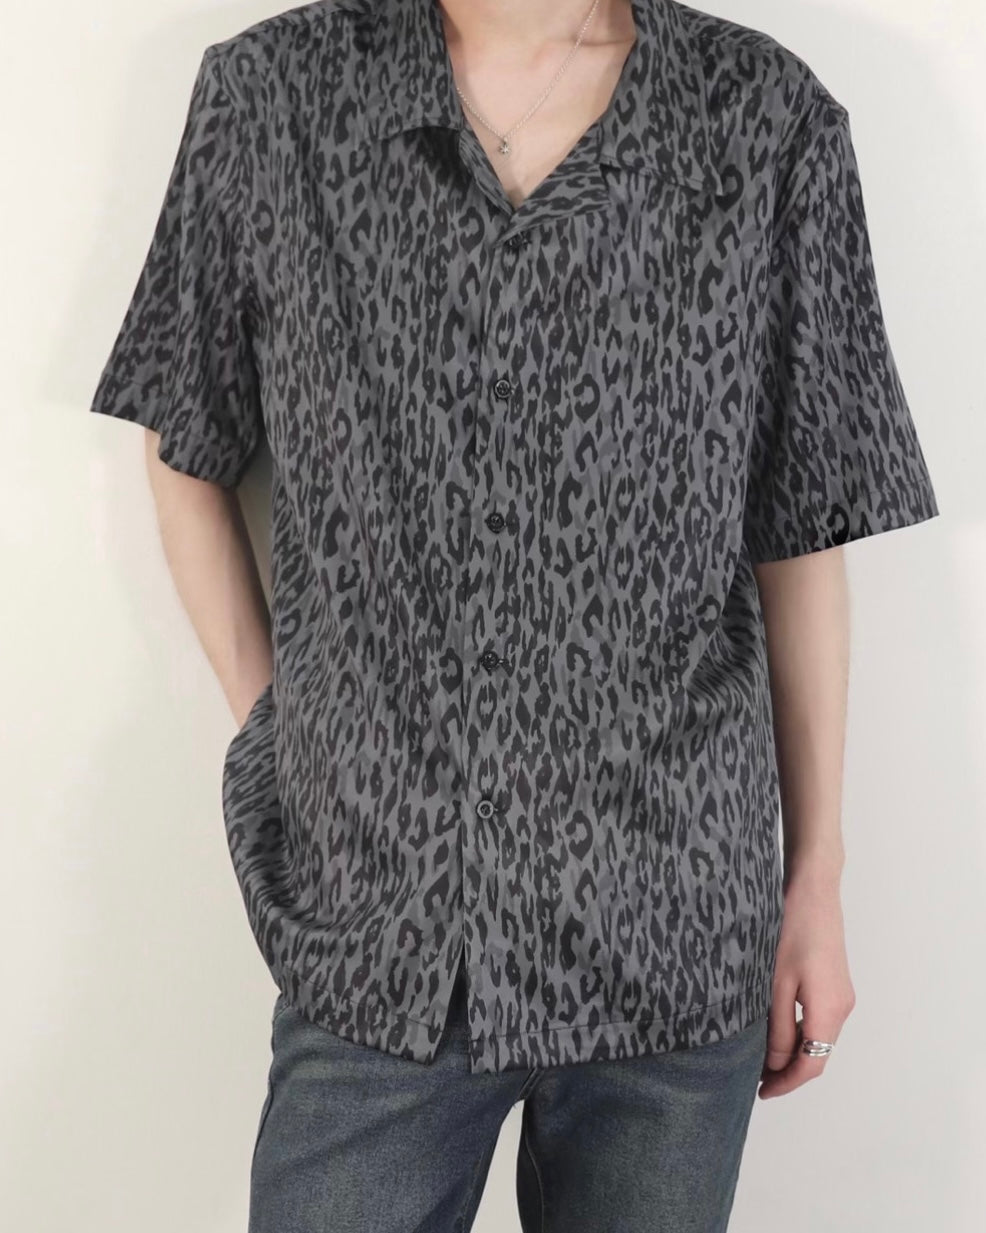 "Leopard Short Sleeve Shirt" (Gray)